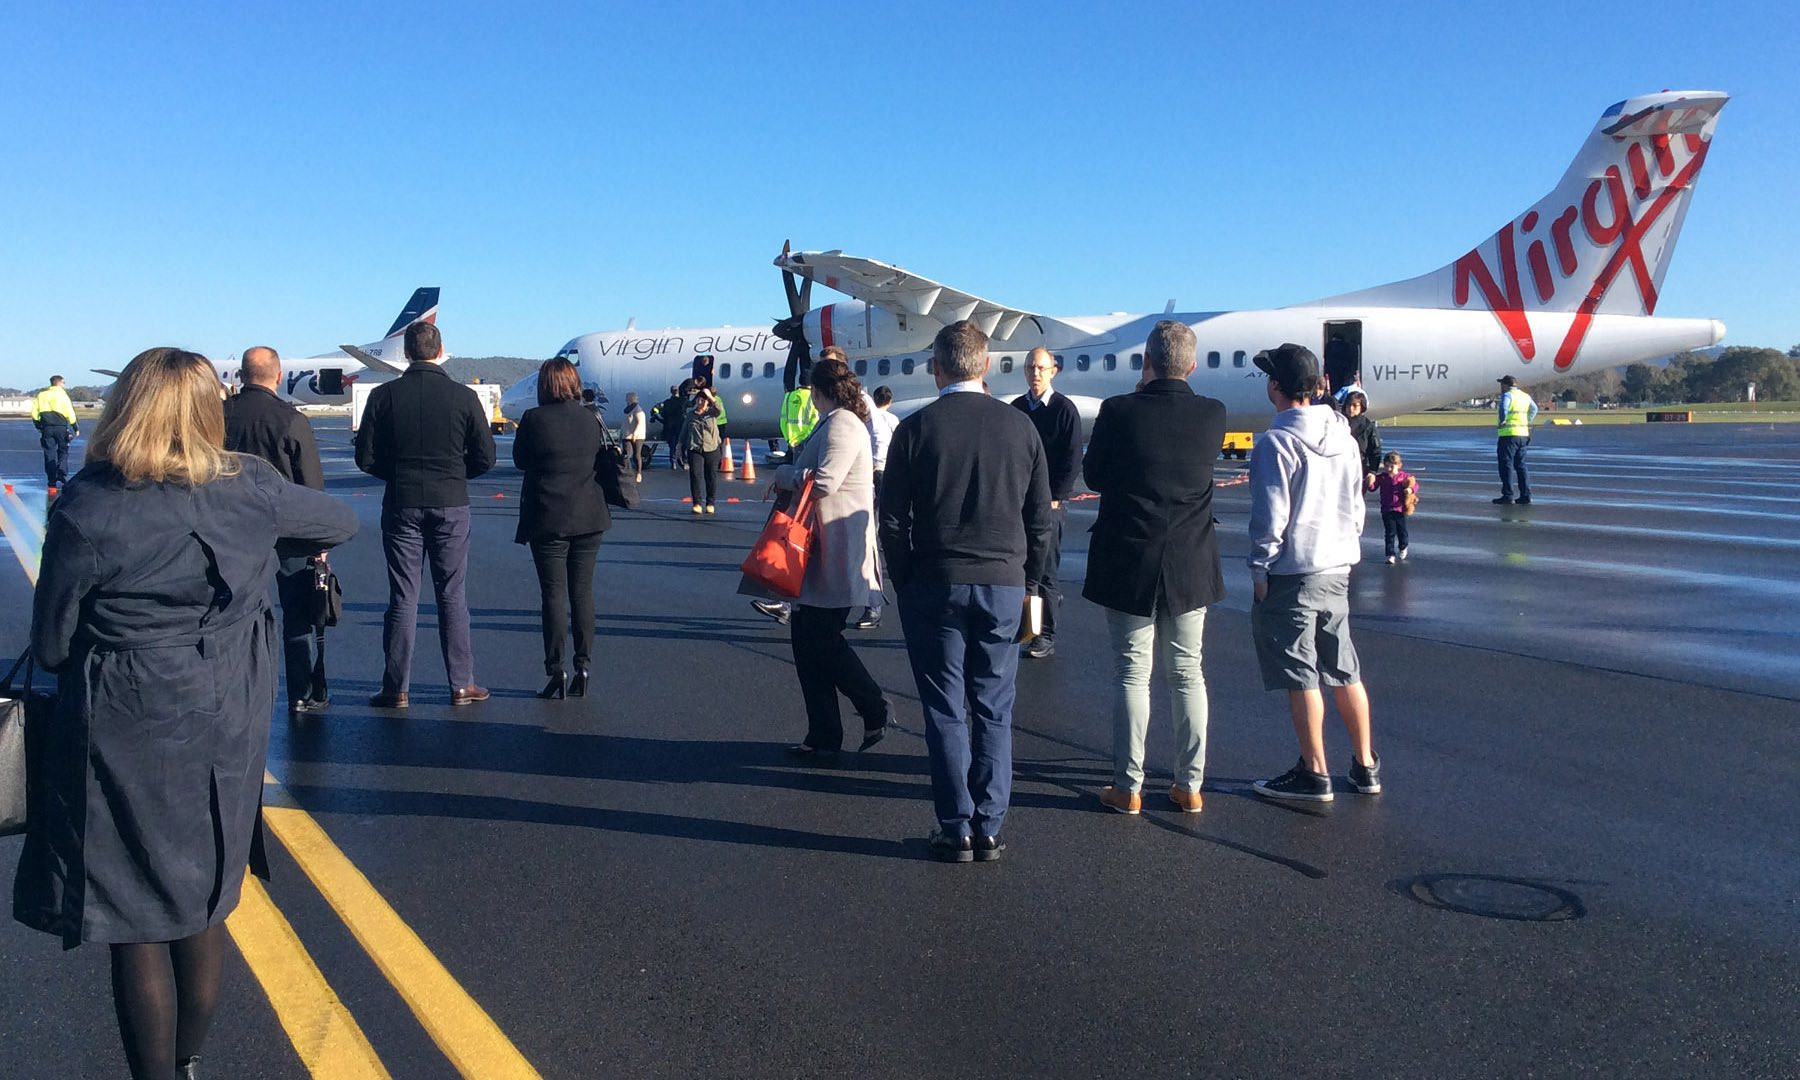 Επιβάτες πηδούν έξω από το αεροπλάνο μετά από απειλή για βόμβα